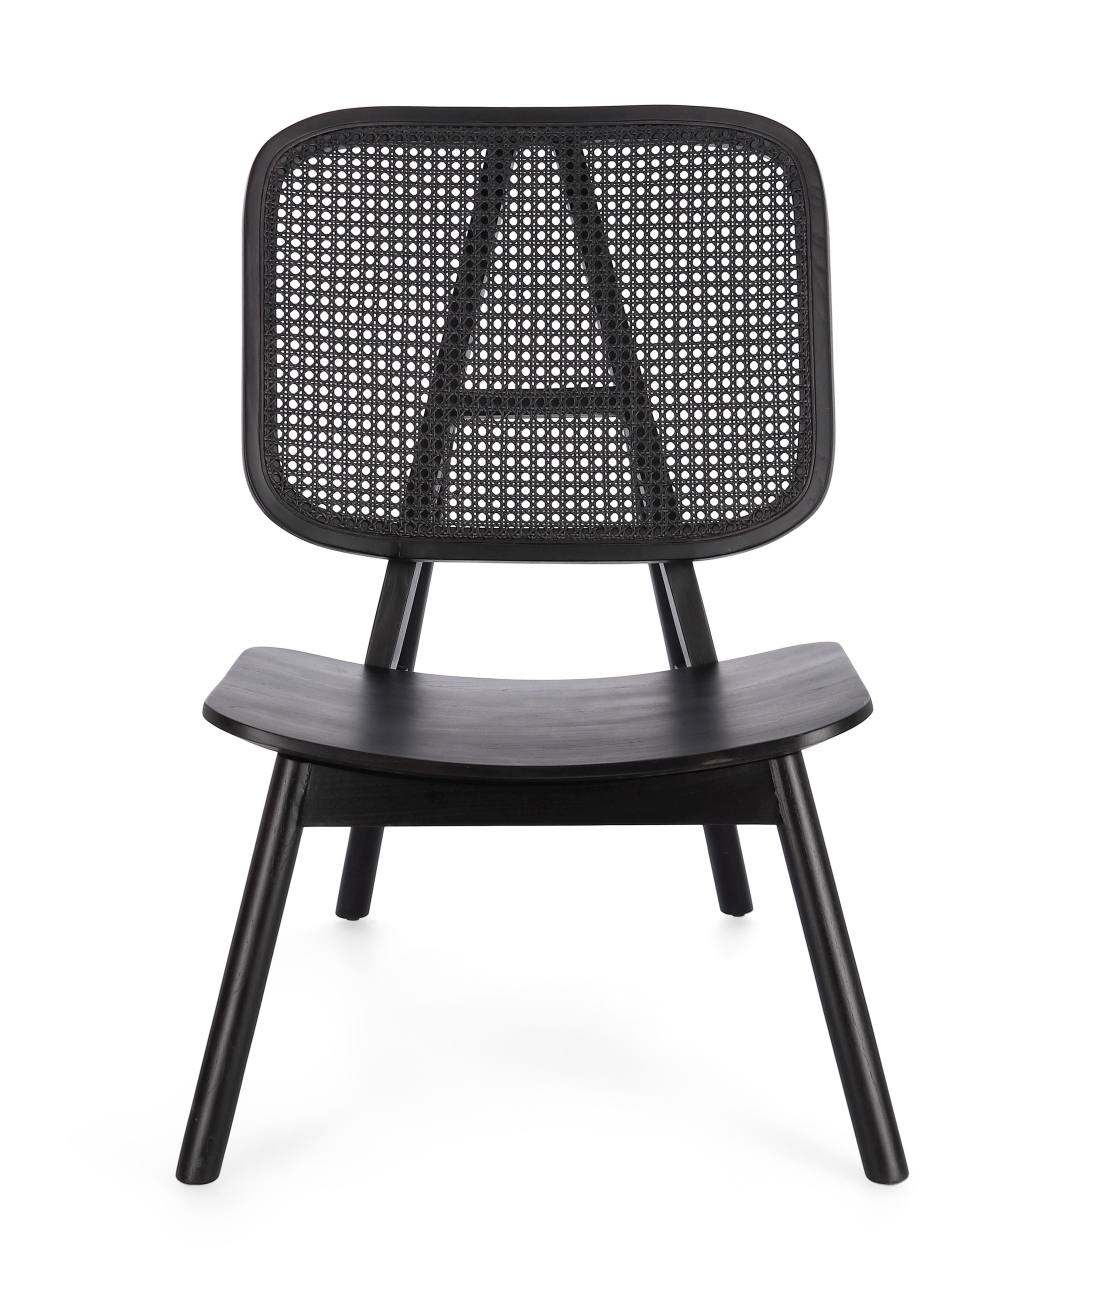 Der Sessel Yves überzeugt mit seinem modernen Stil. Gefertigt wurde er aus Teakholz, welches einen schwarzen Farbton besitzt. Die Rückenlehne ist aus Rattan und hat eine schwarze Farbe. Der Sessel besitzt eine Sitzhöhe von 38 cm.